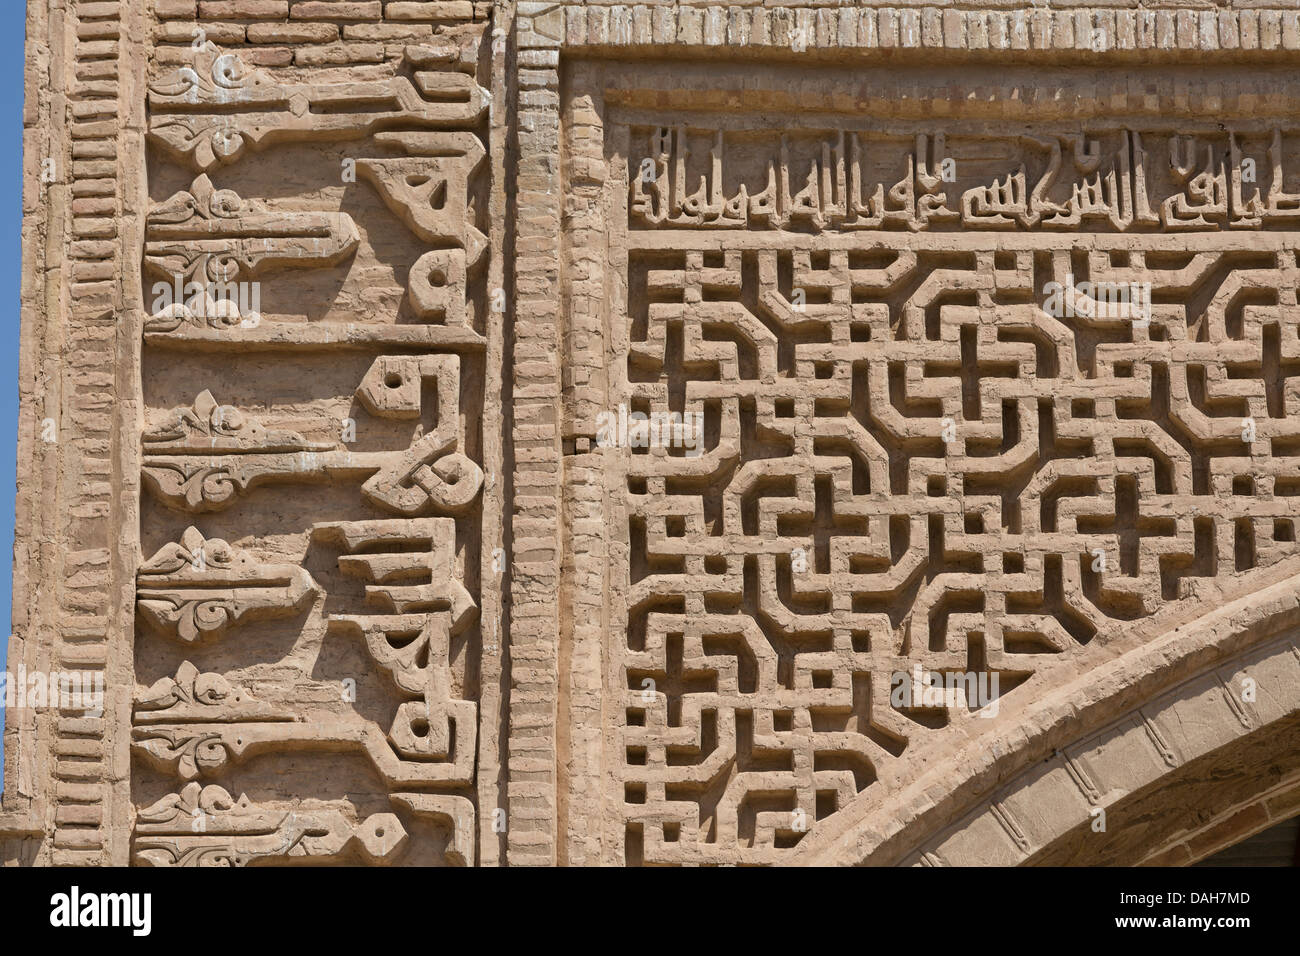 Dettaglio della muratura, Robat-i caravanserai Sharaf, Khorasan, Iran Foto Stock